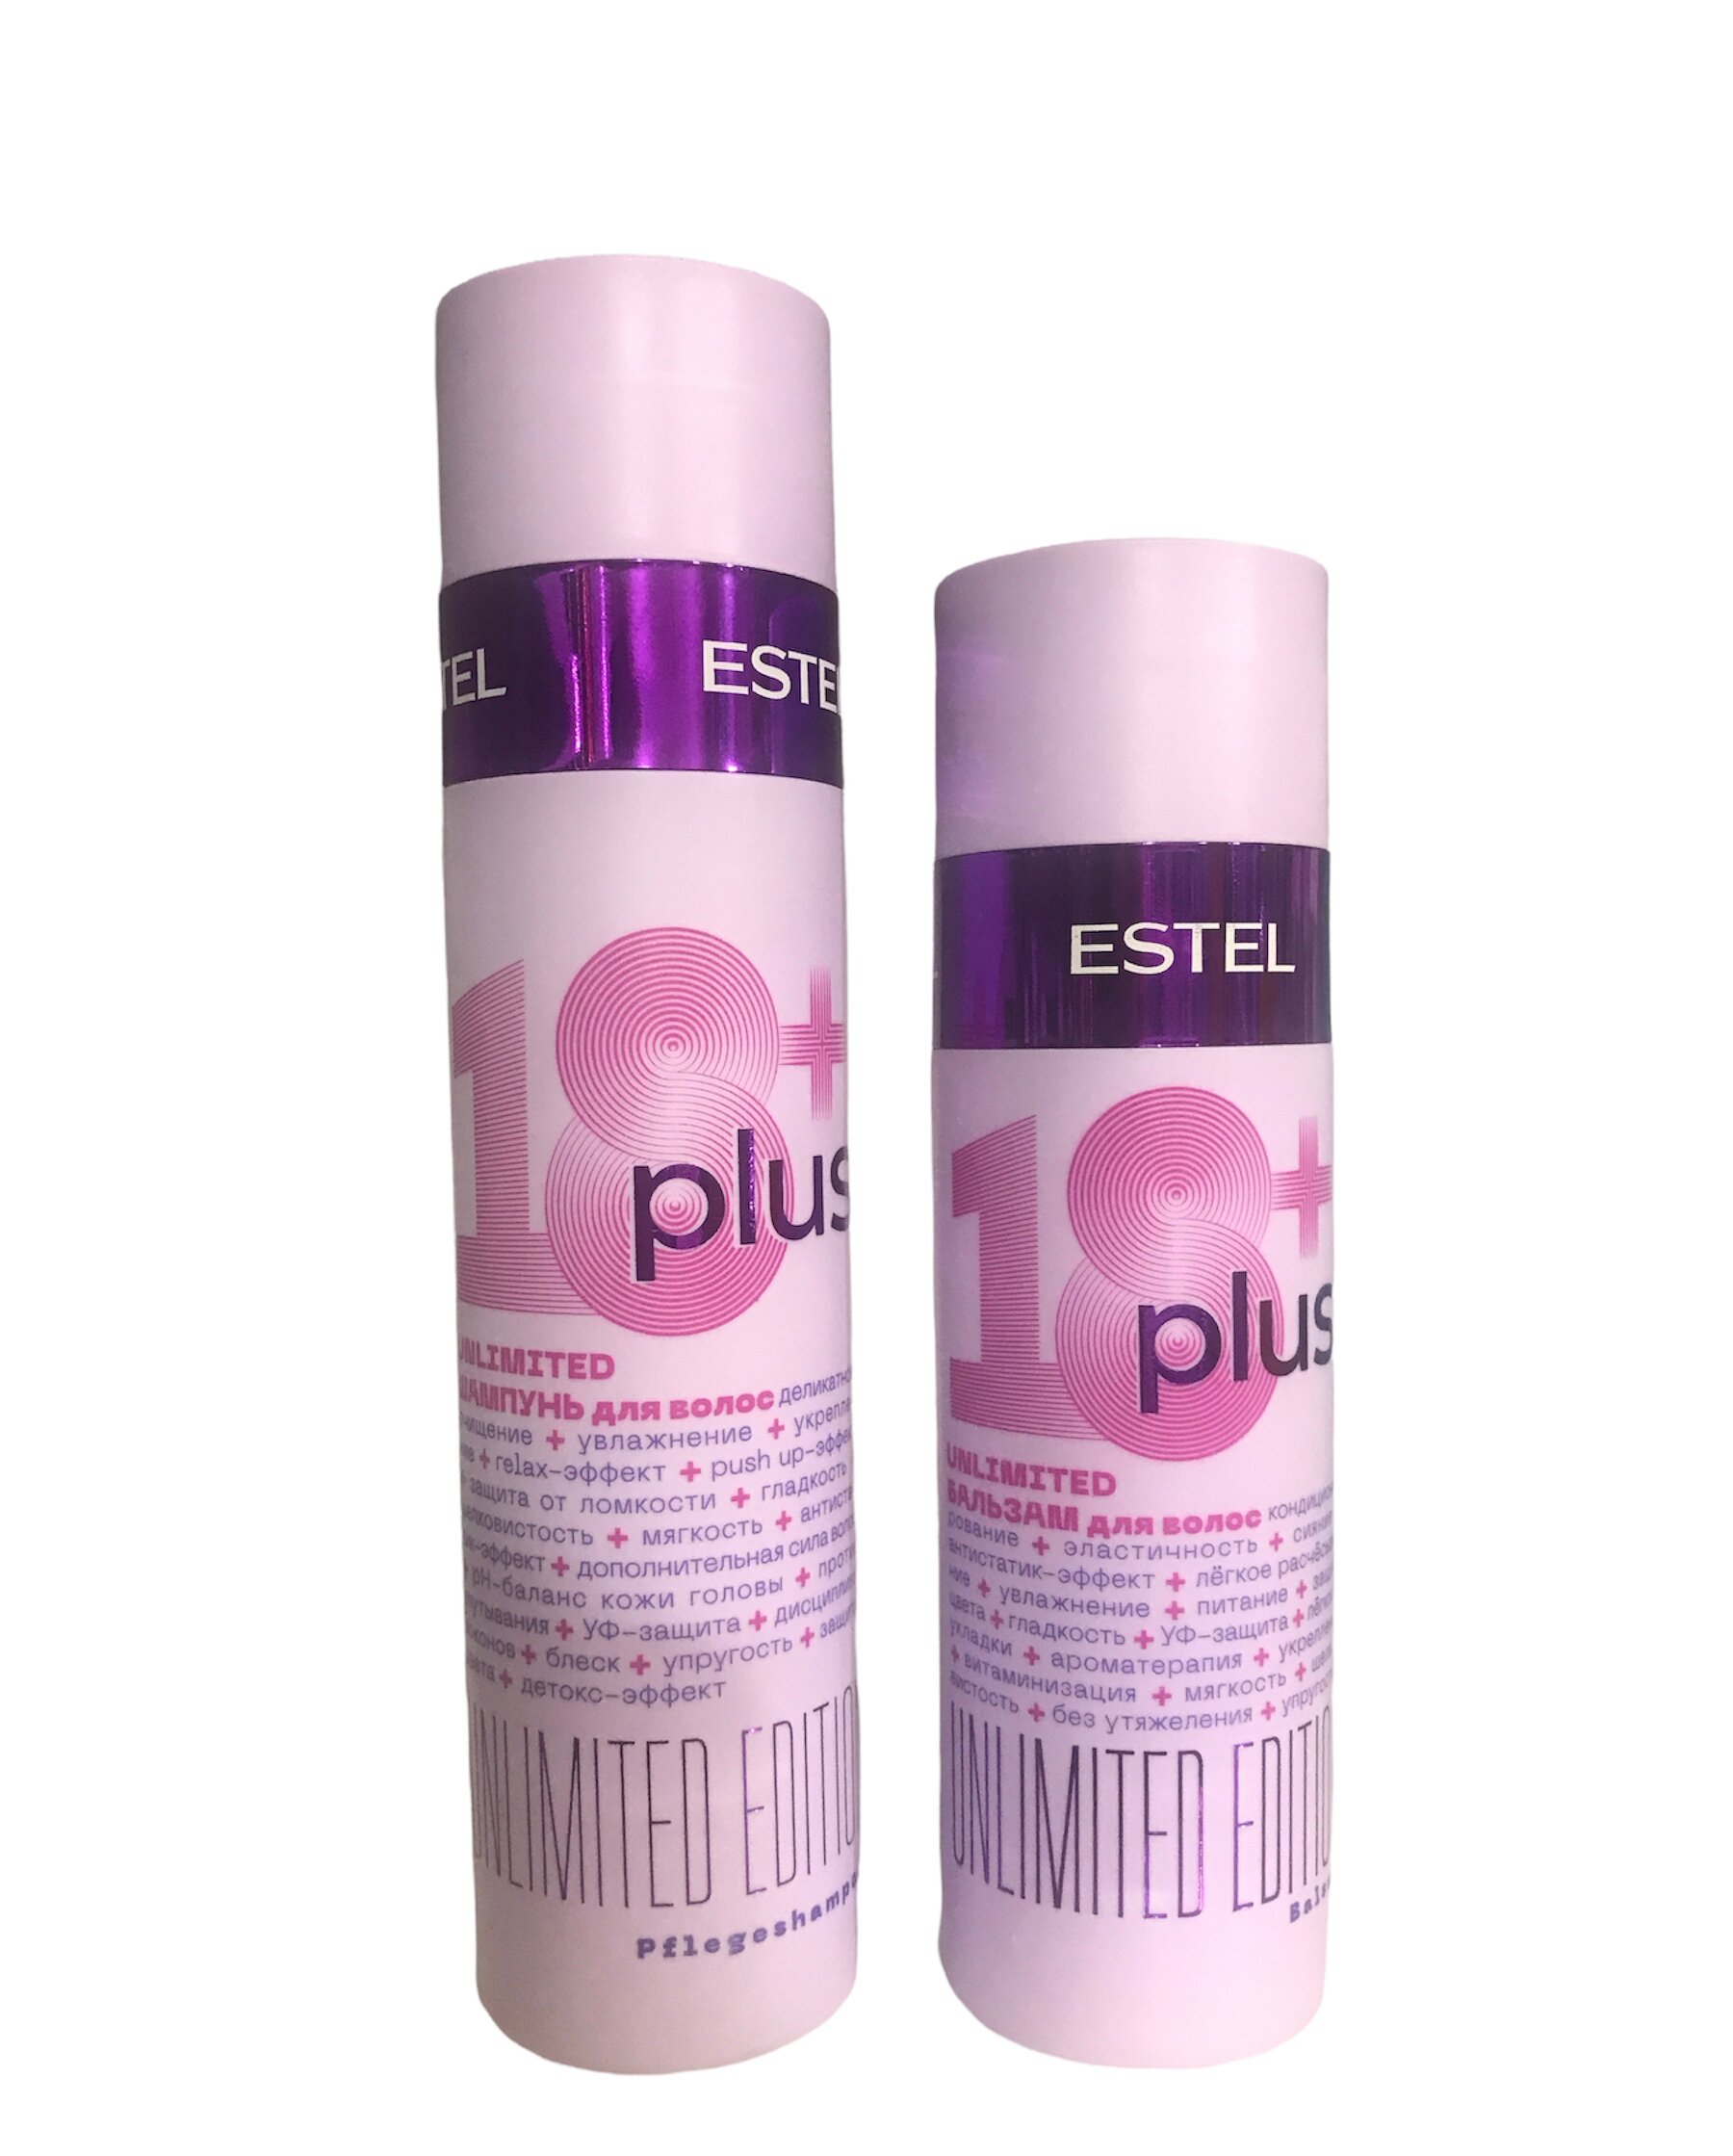 Набор ESTEL 18+ Plus набор для ухода за волосами шампунь 250 мл + бальзам 200 мл